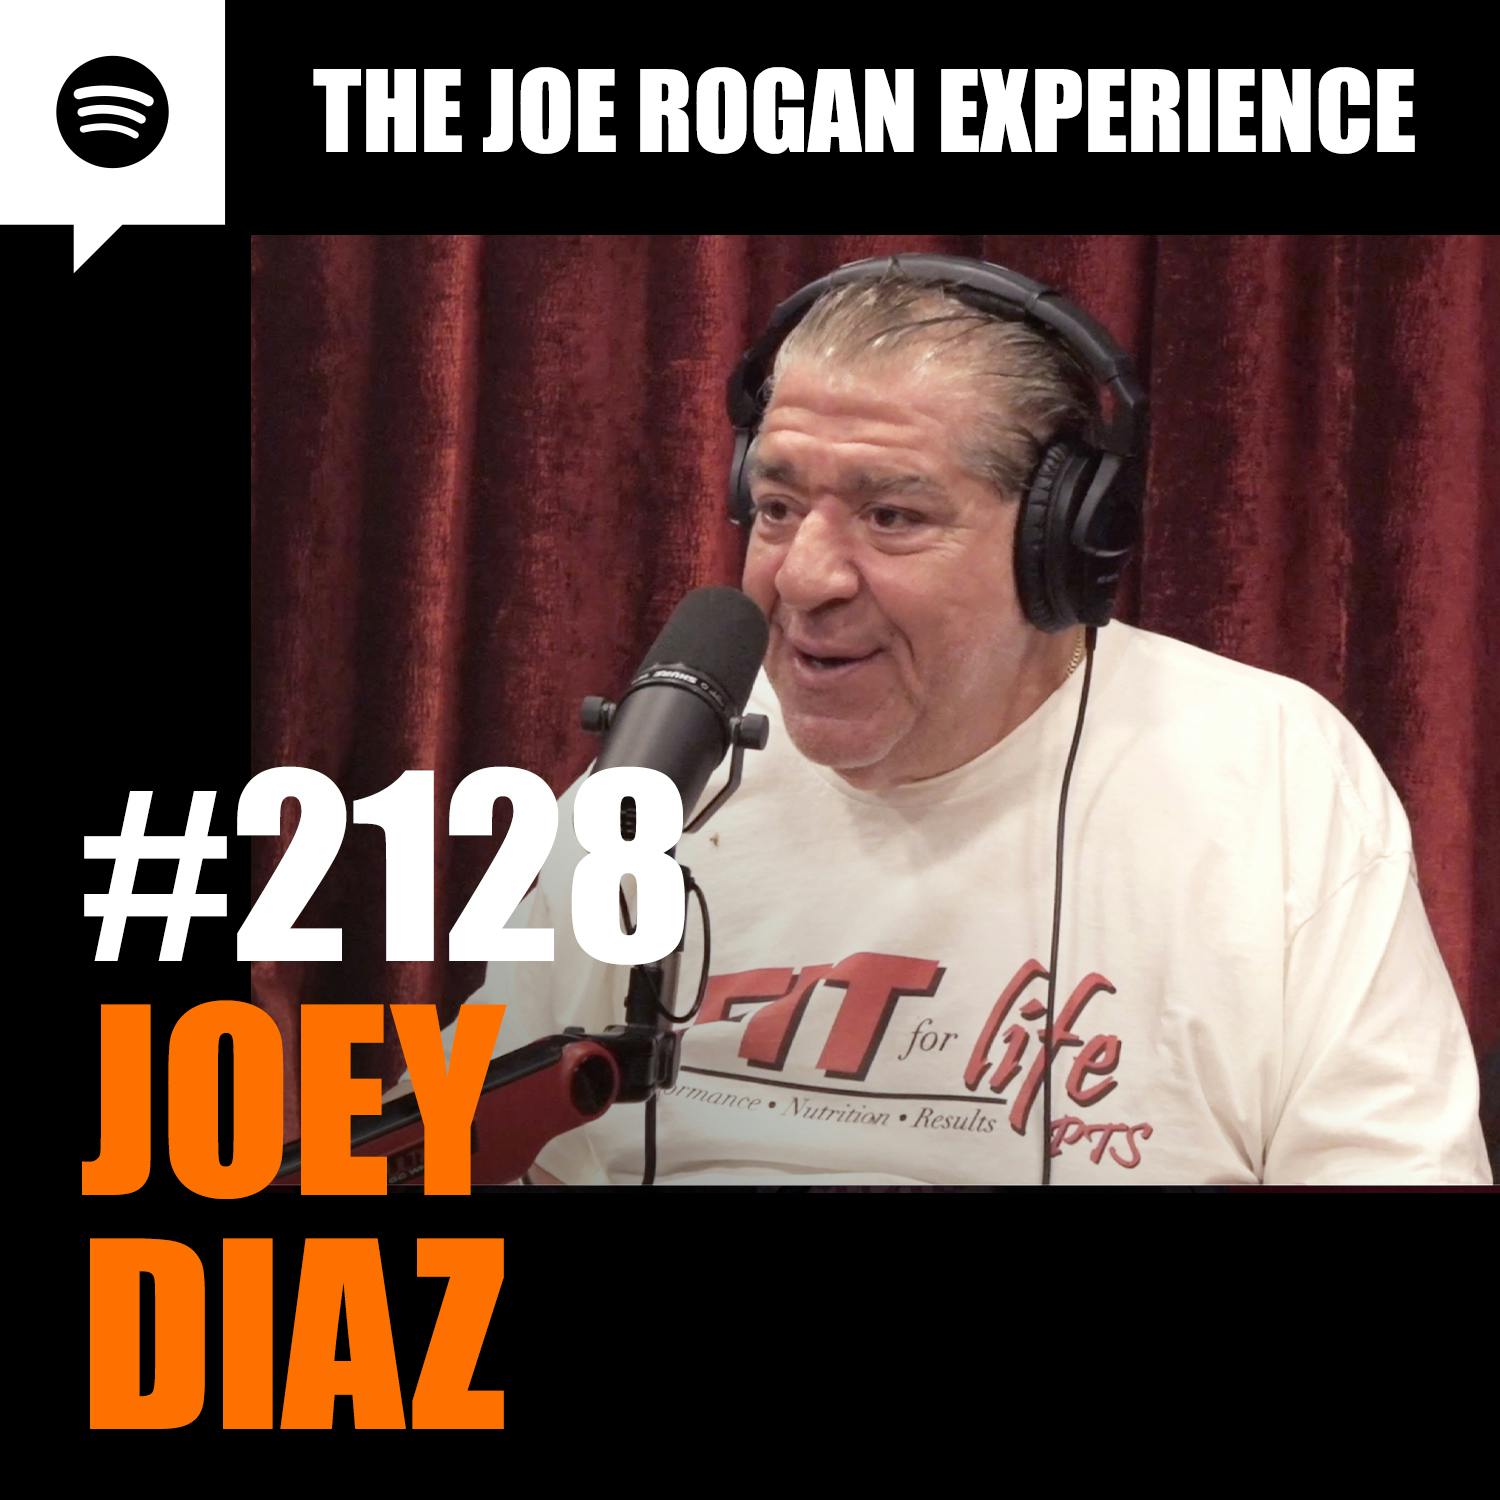 #2128 - Joey Diaz